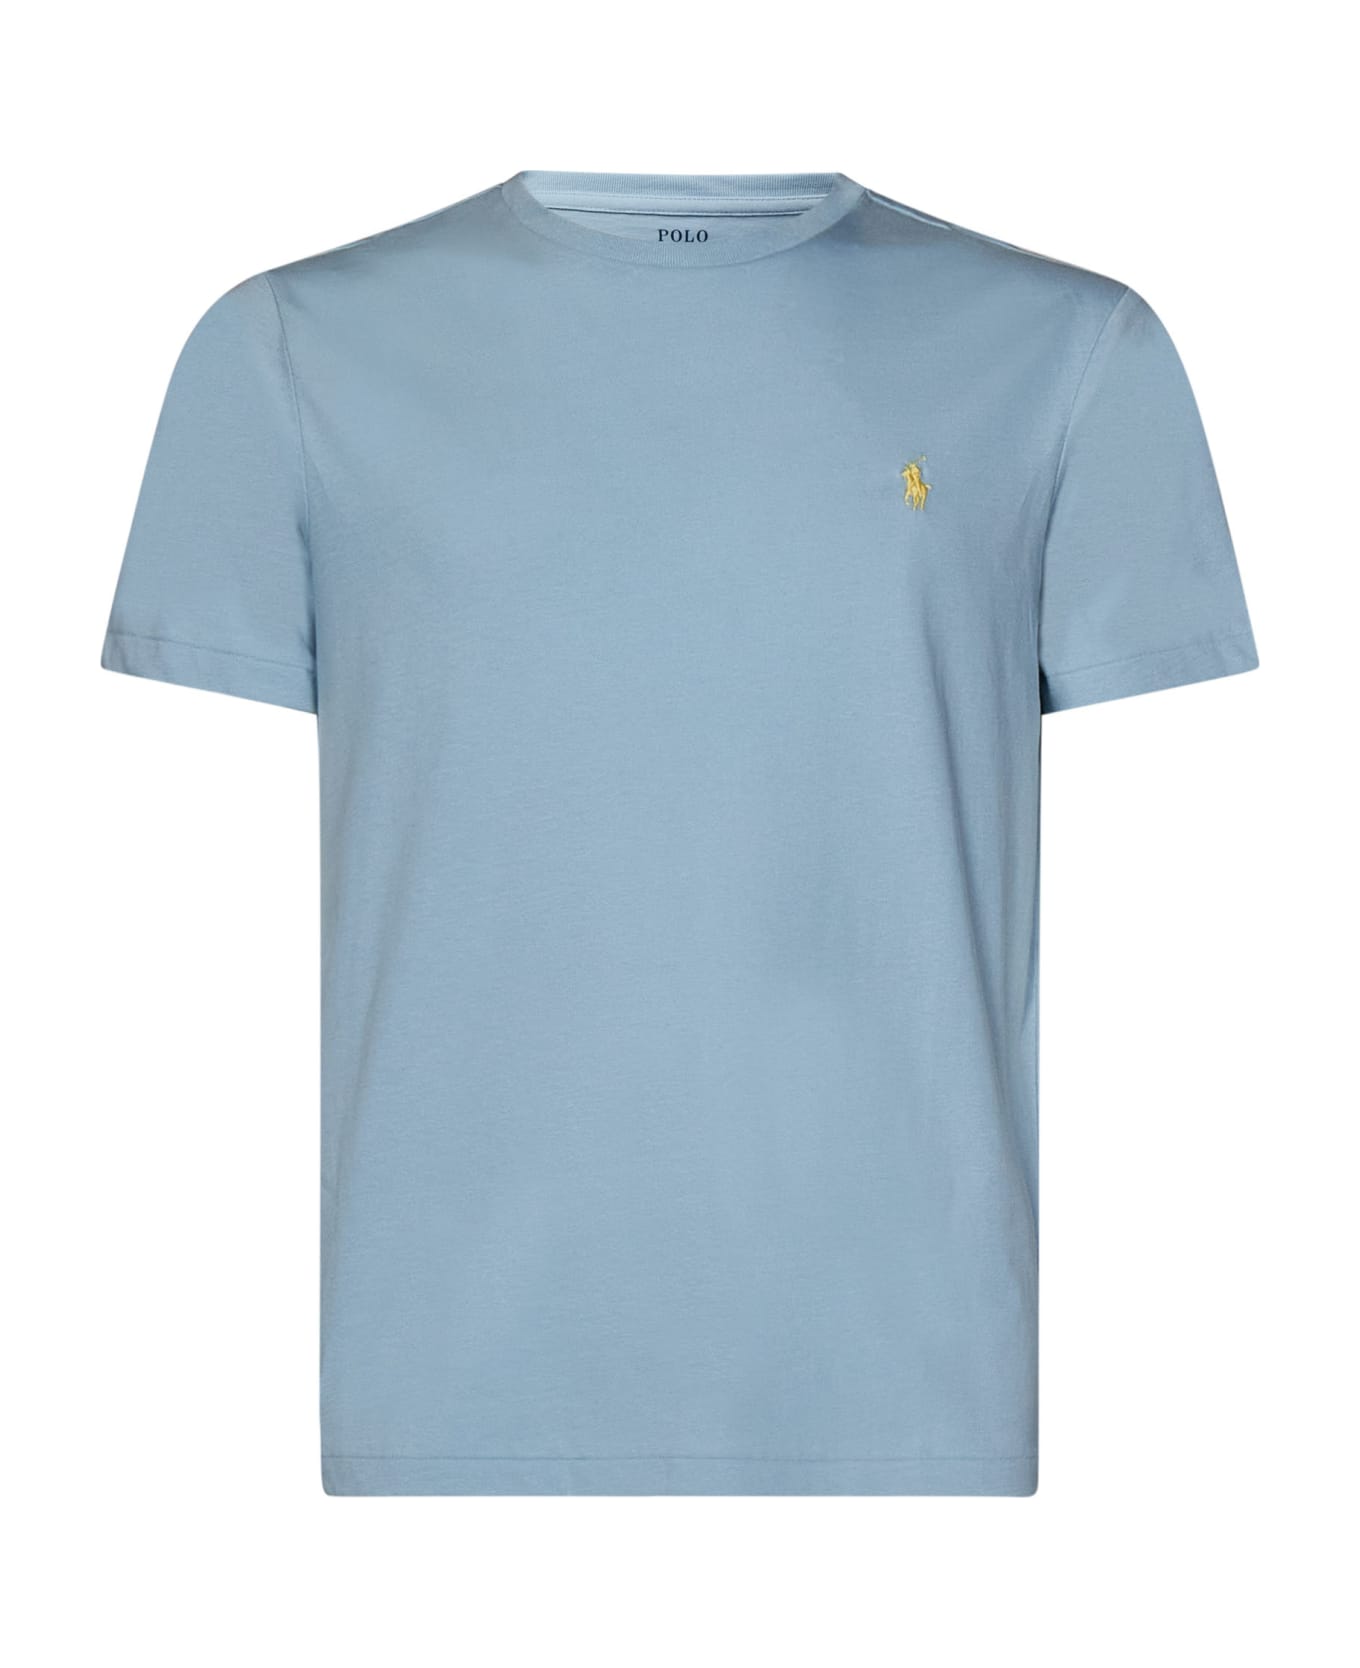 Polo Ralph Lauren T-shirt Polo Ralph Lauren - Light Blue シャツ